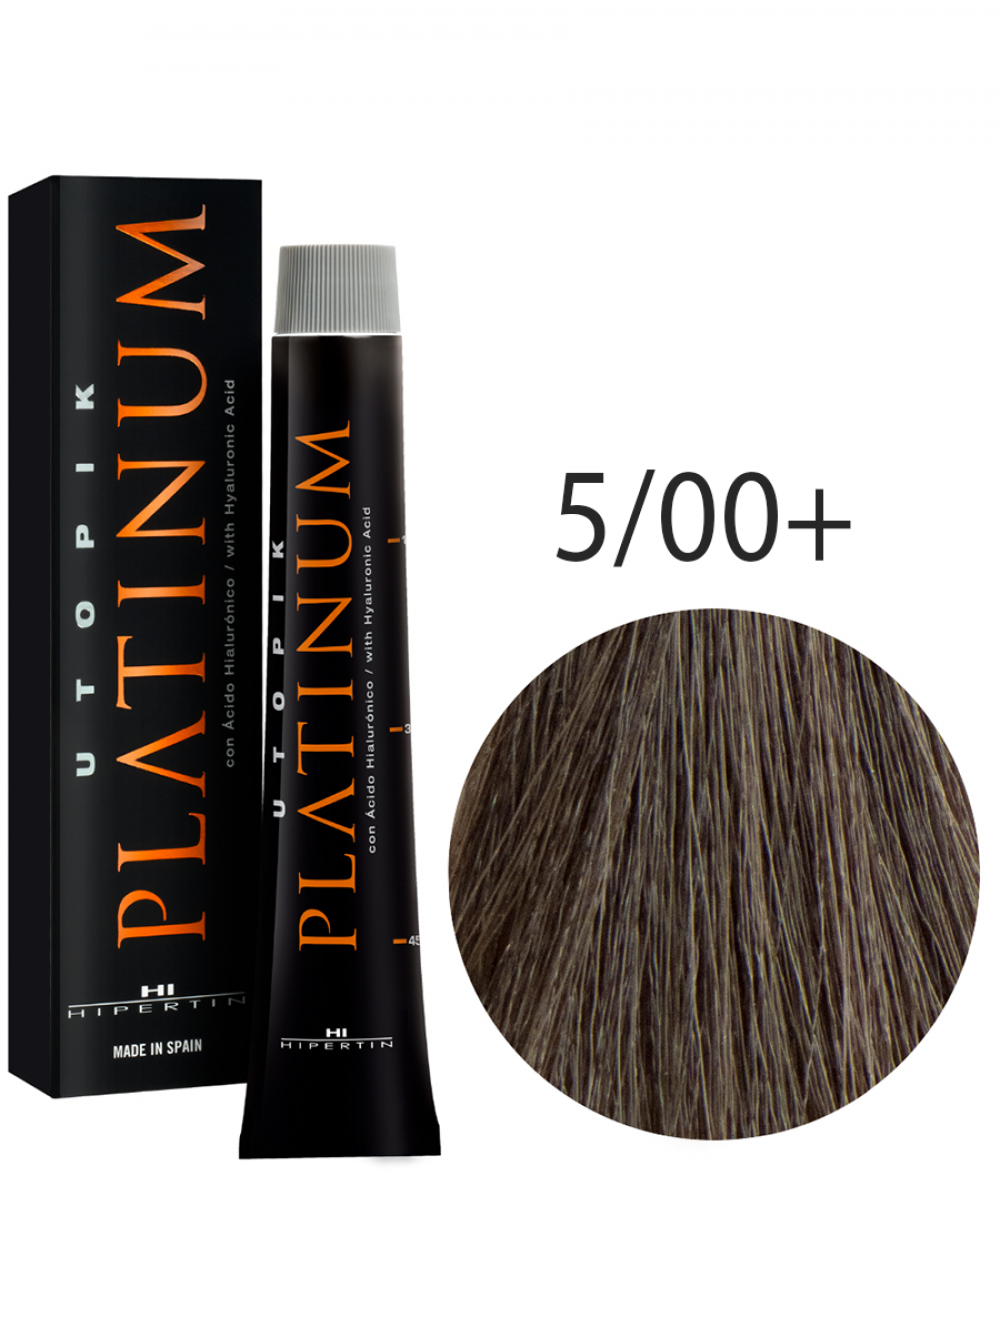 Краска для волос Utopik Platinum 5/00+, светло-каштановый интенсивный, 60 мл